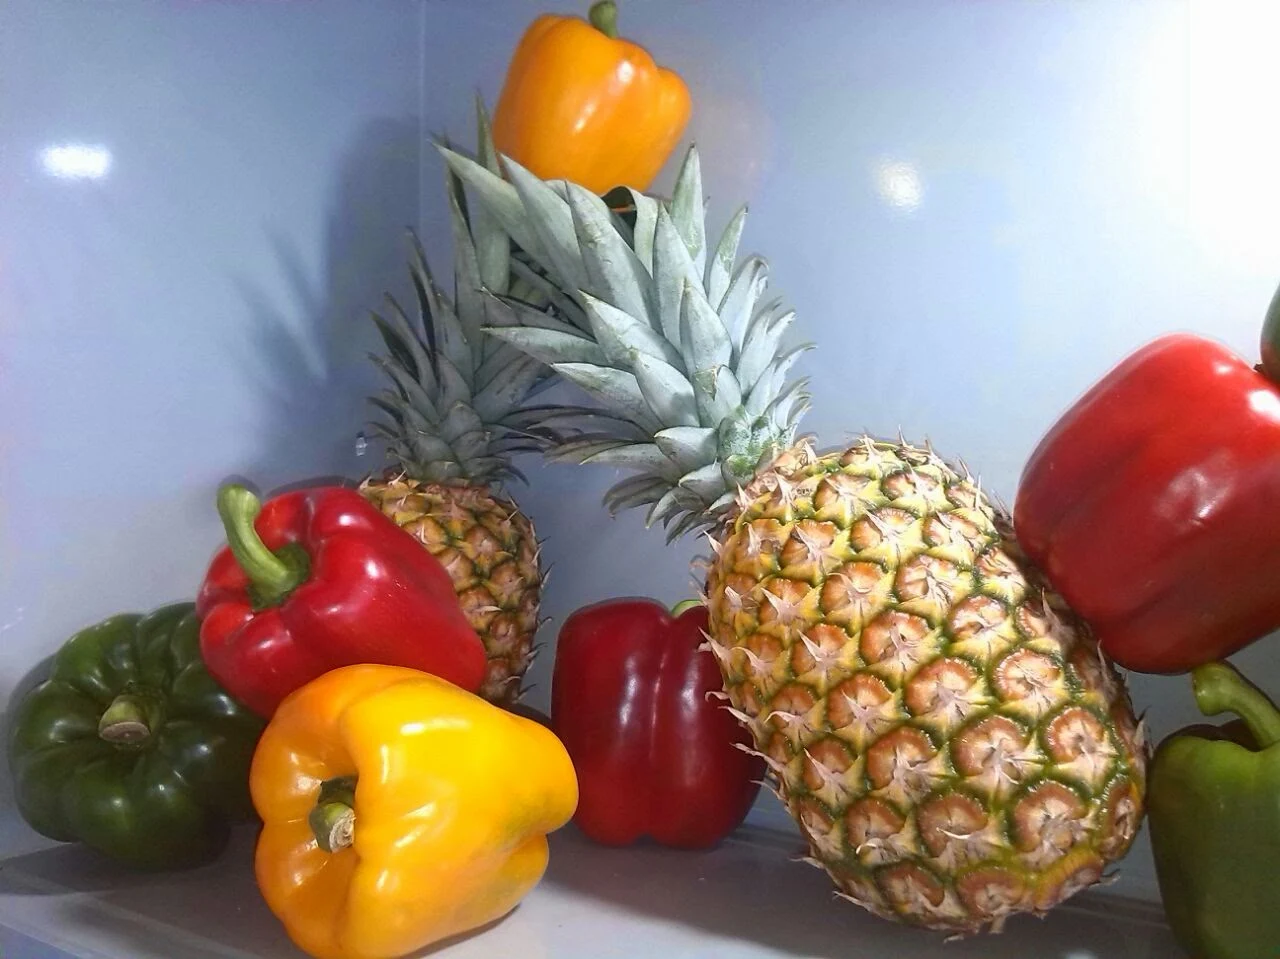 frutas y vegetales